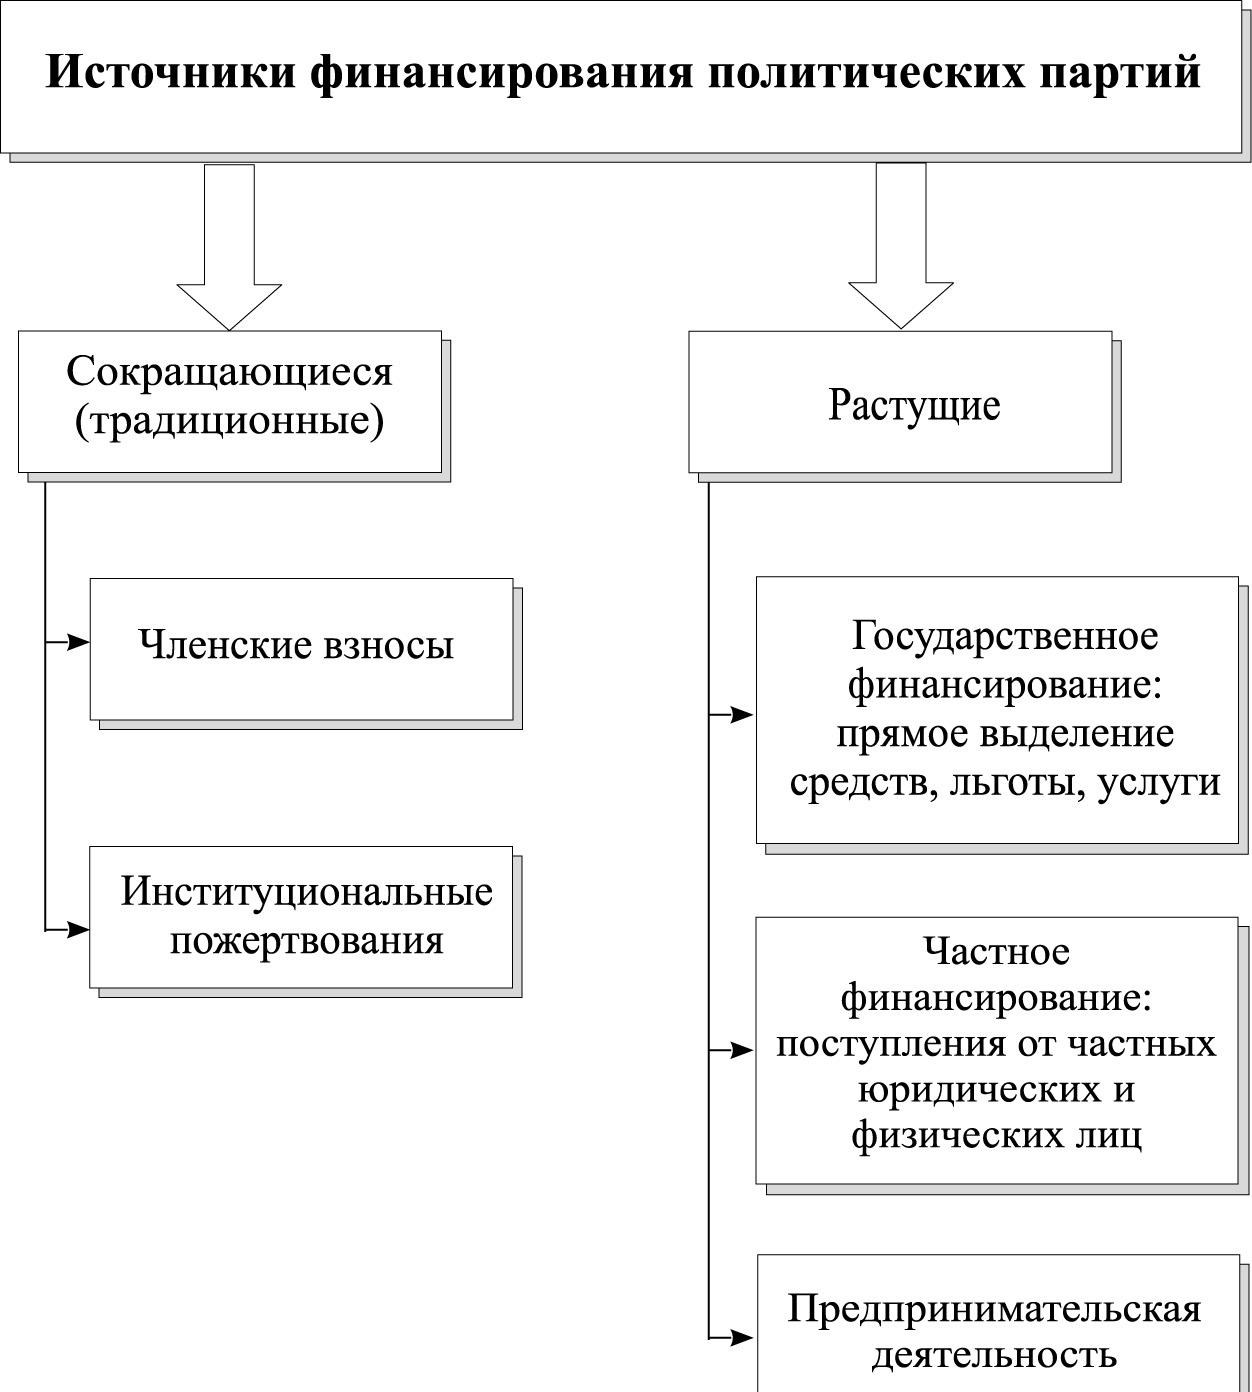 Источники финансирования российских политических партий